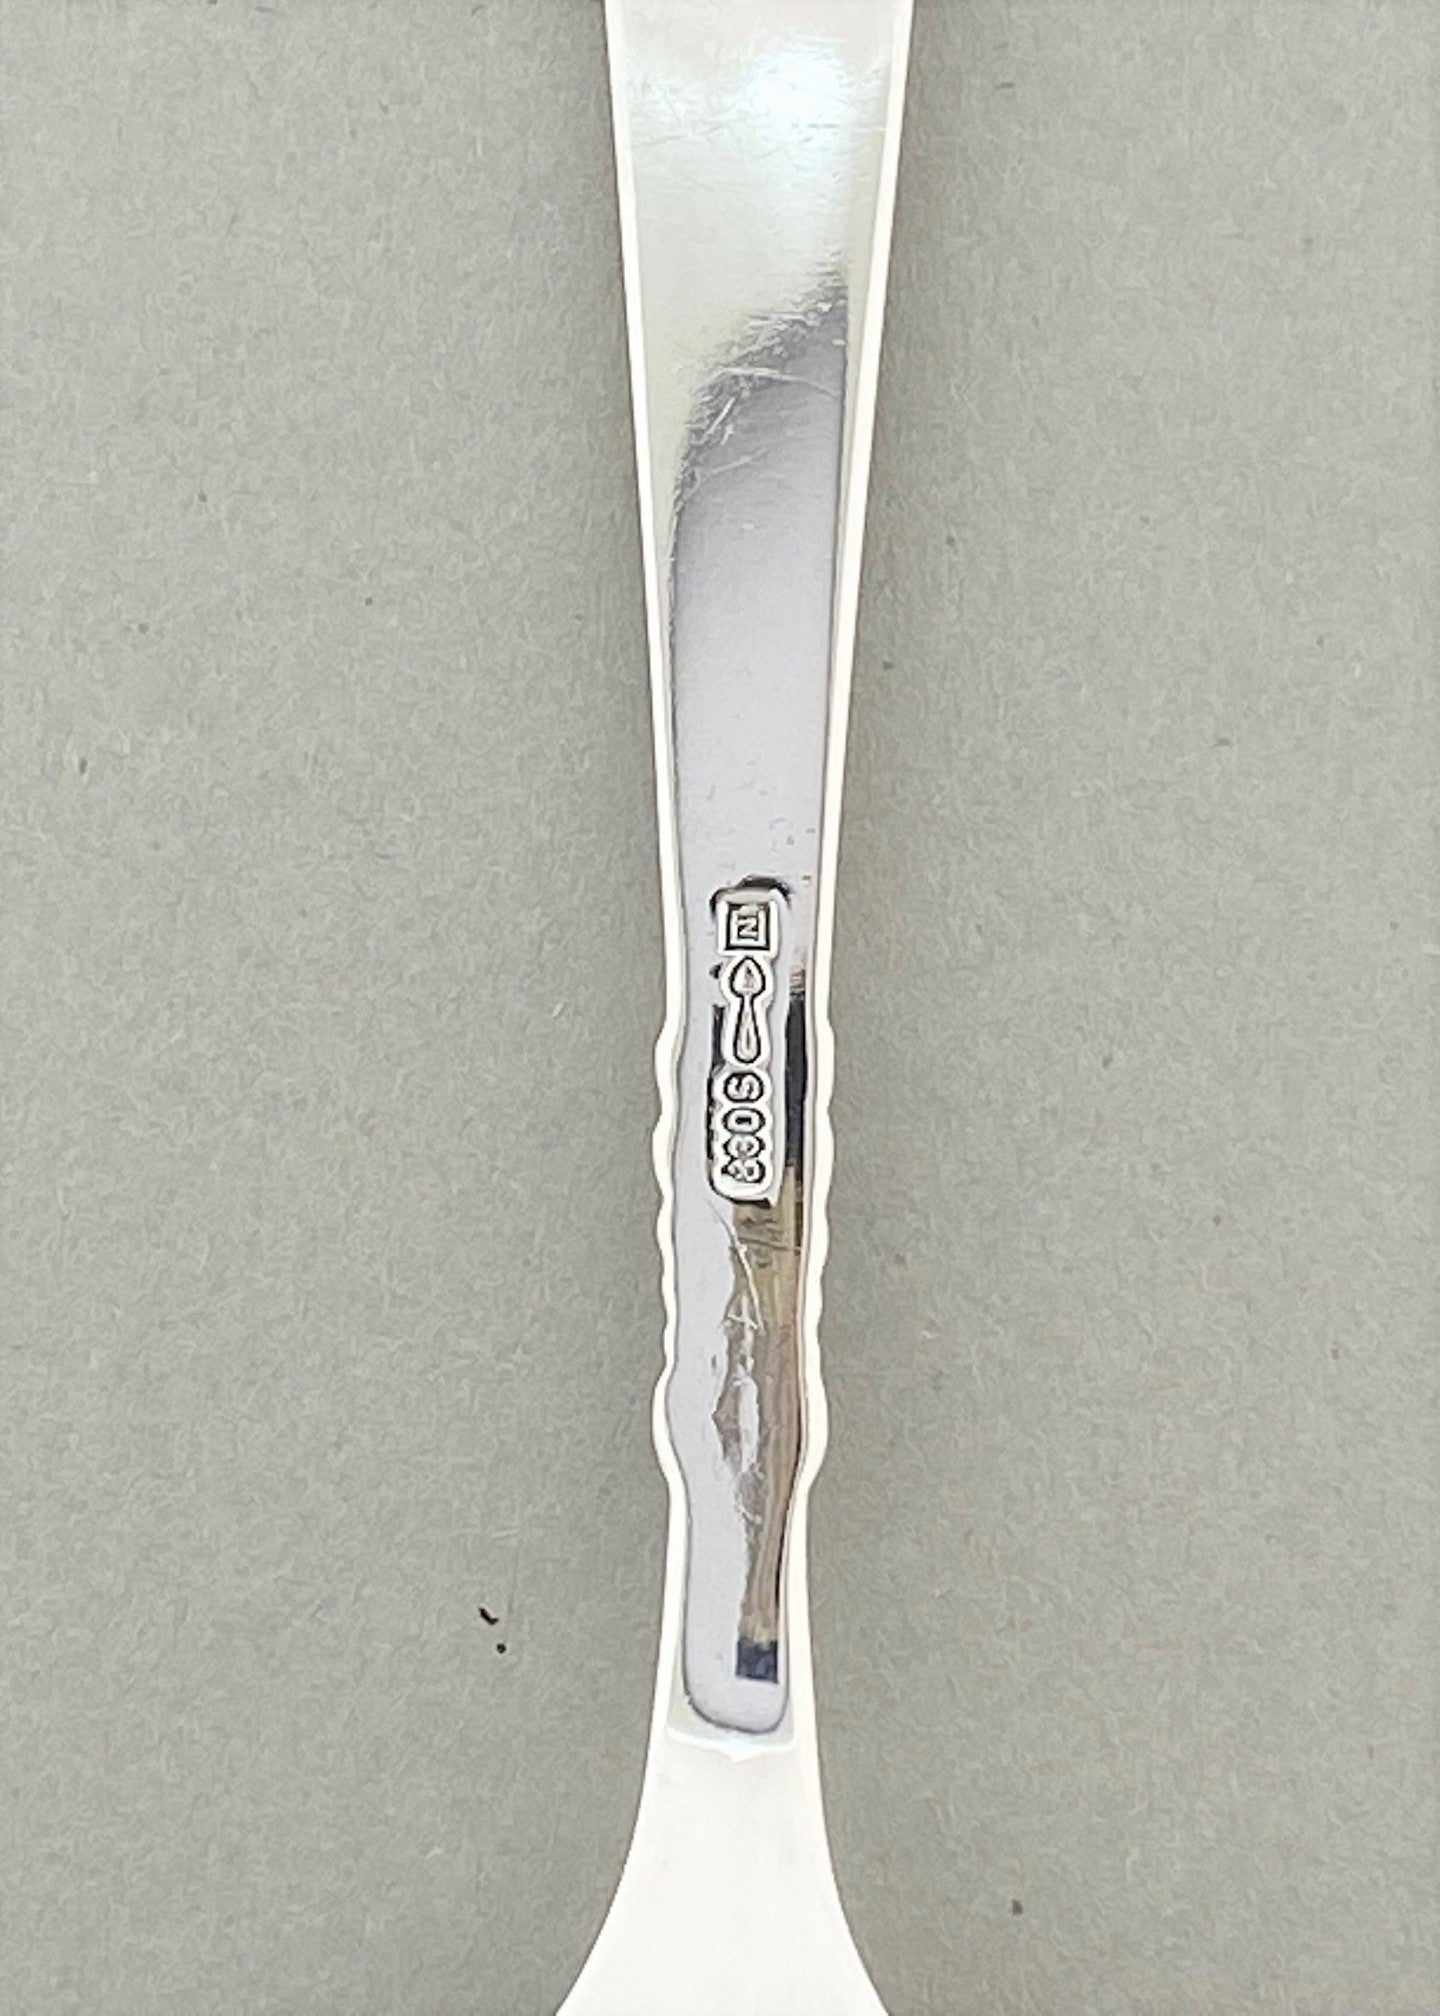 Vintage Odel cold fork / tapas fork / cold cuts fork